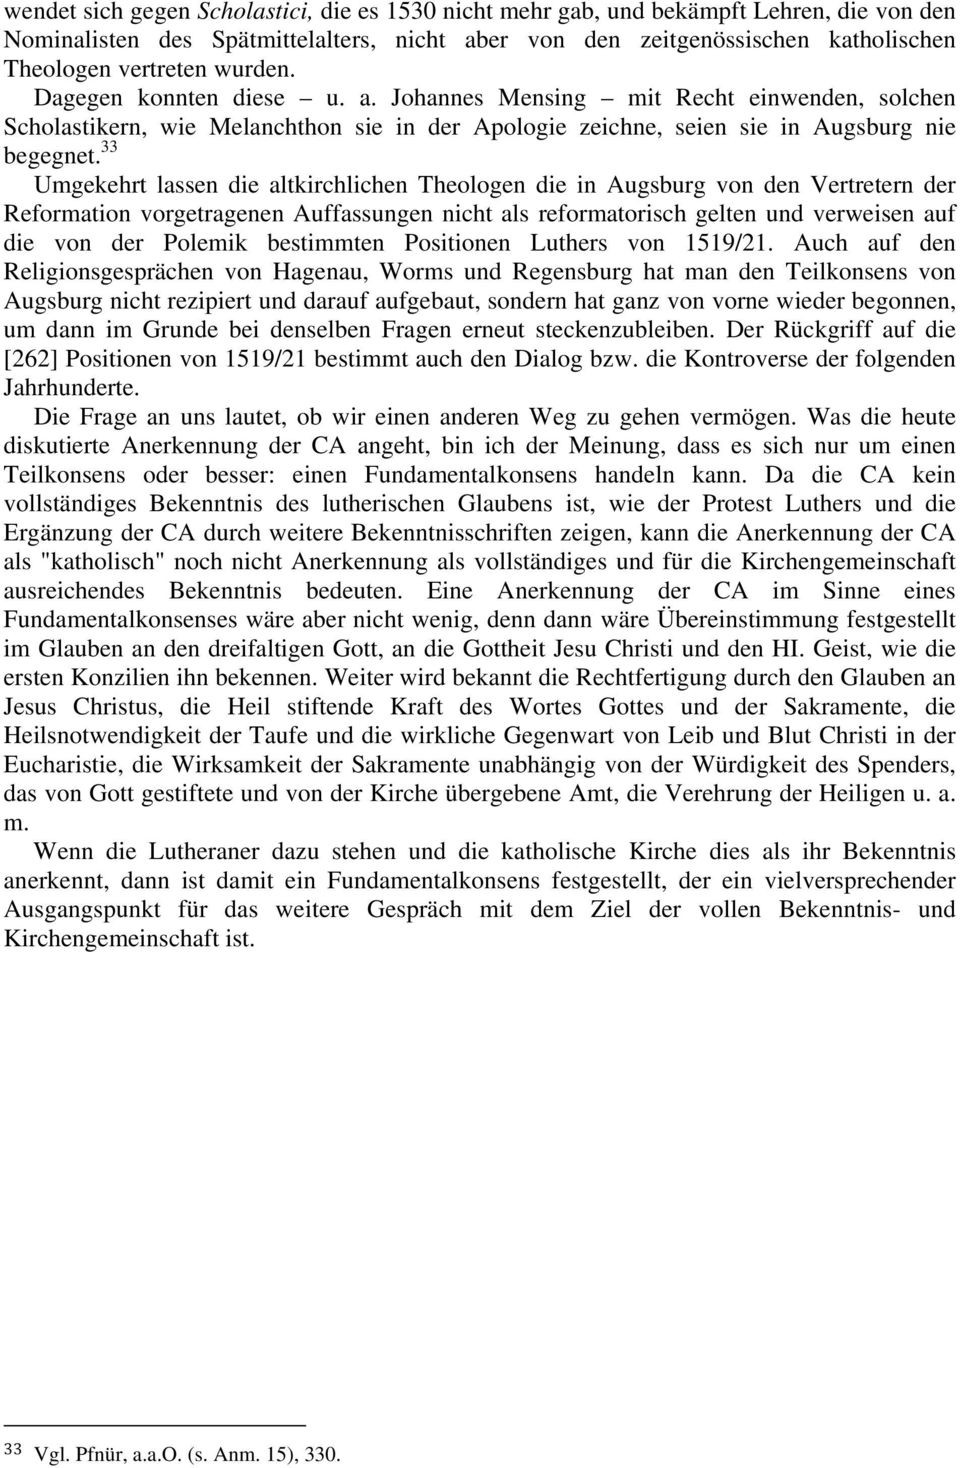 33 Umgekehrt lassen die altkirchlichen Theologen die in Augsburg von den Vertretern der Reformation vorgetragenen Auffassungen nicht als reformatorisch gelten und verweisen auf die von der Polemik